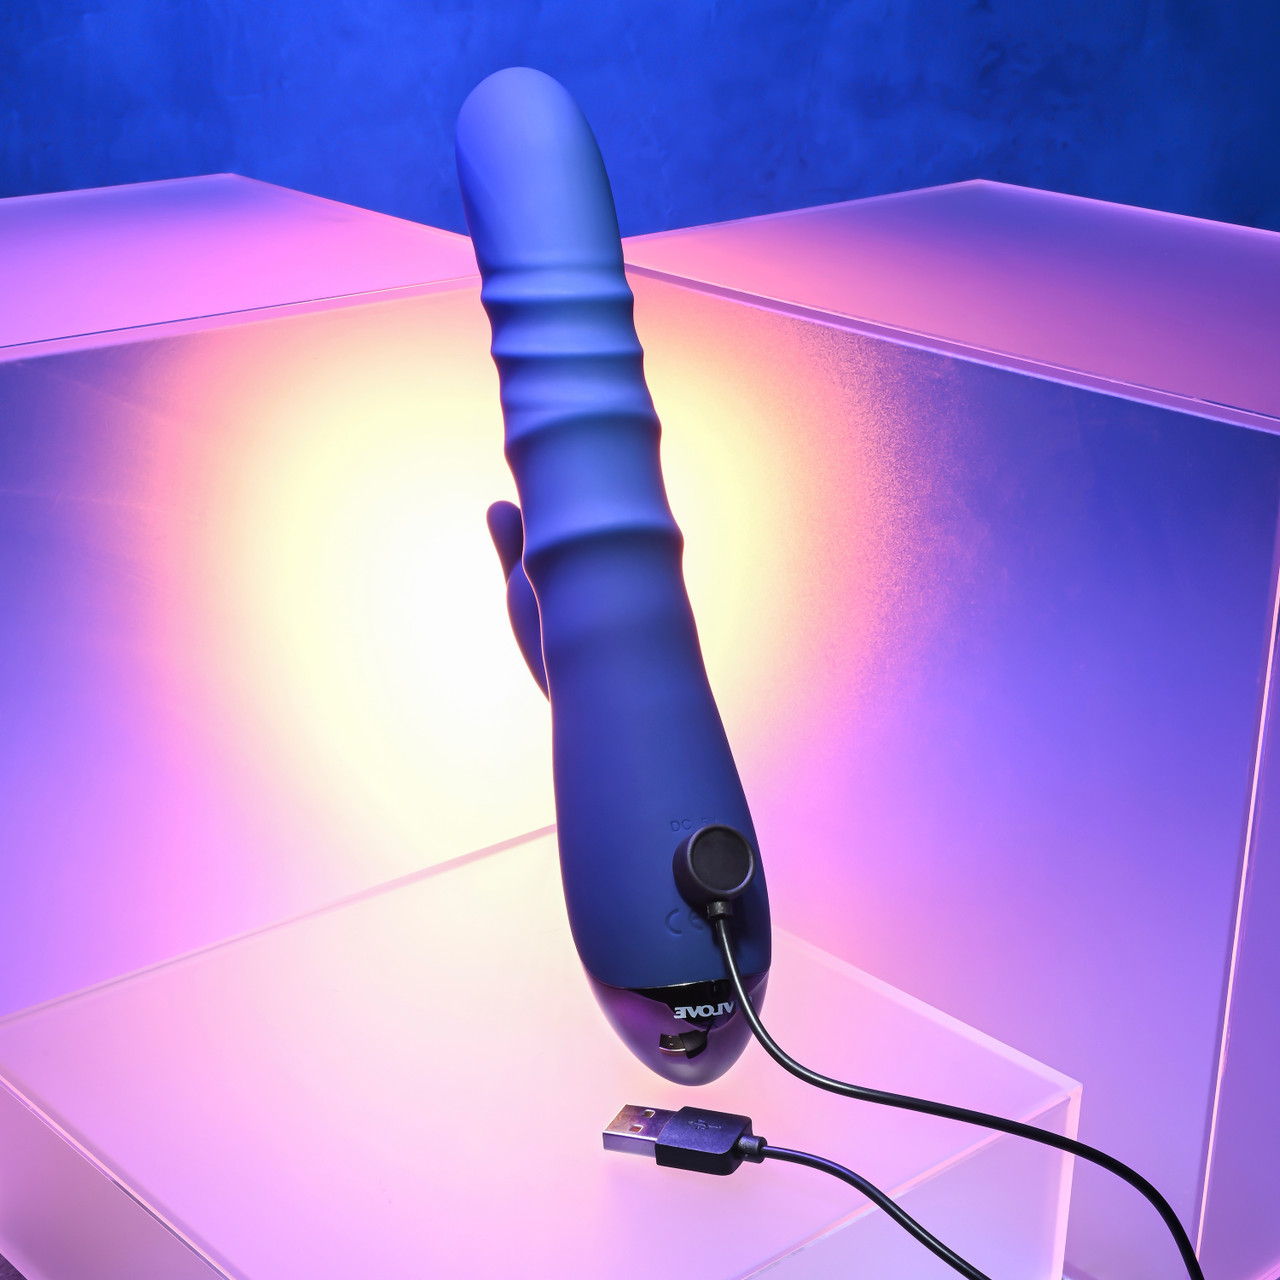 Фрикционный вибратор-кролик с подвижными кольцами Evolved The Ringer, синий